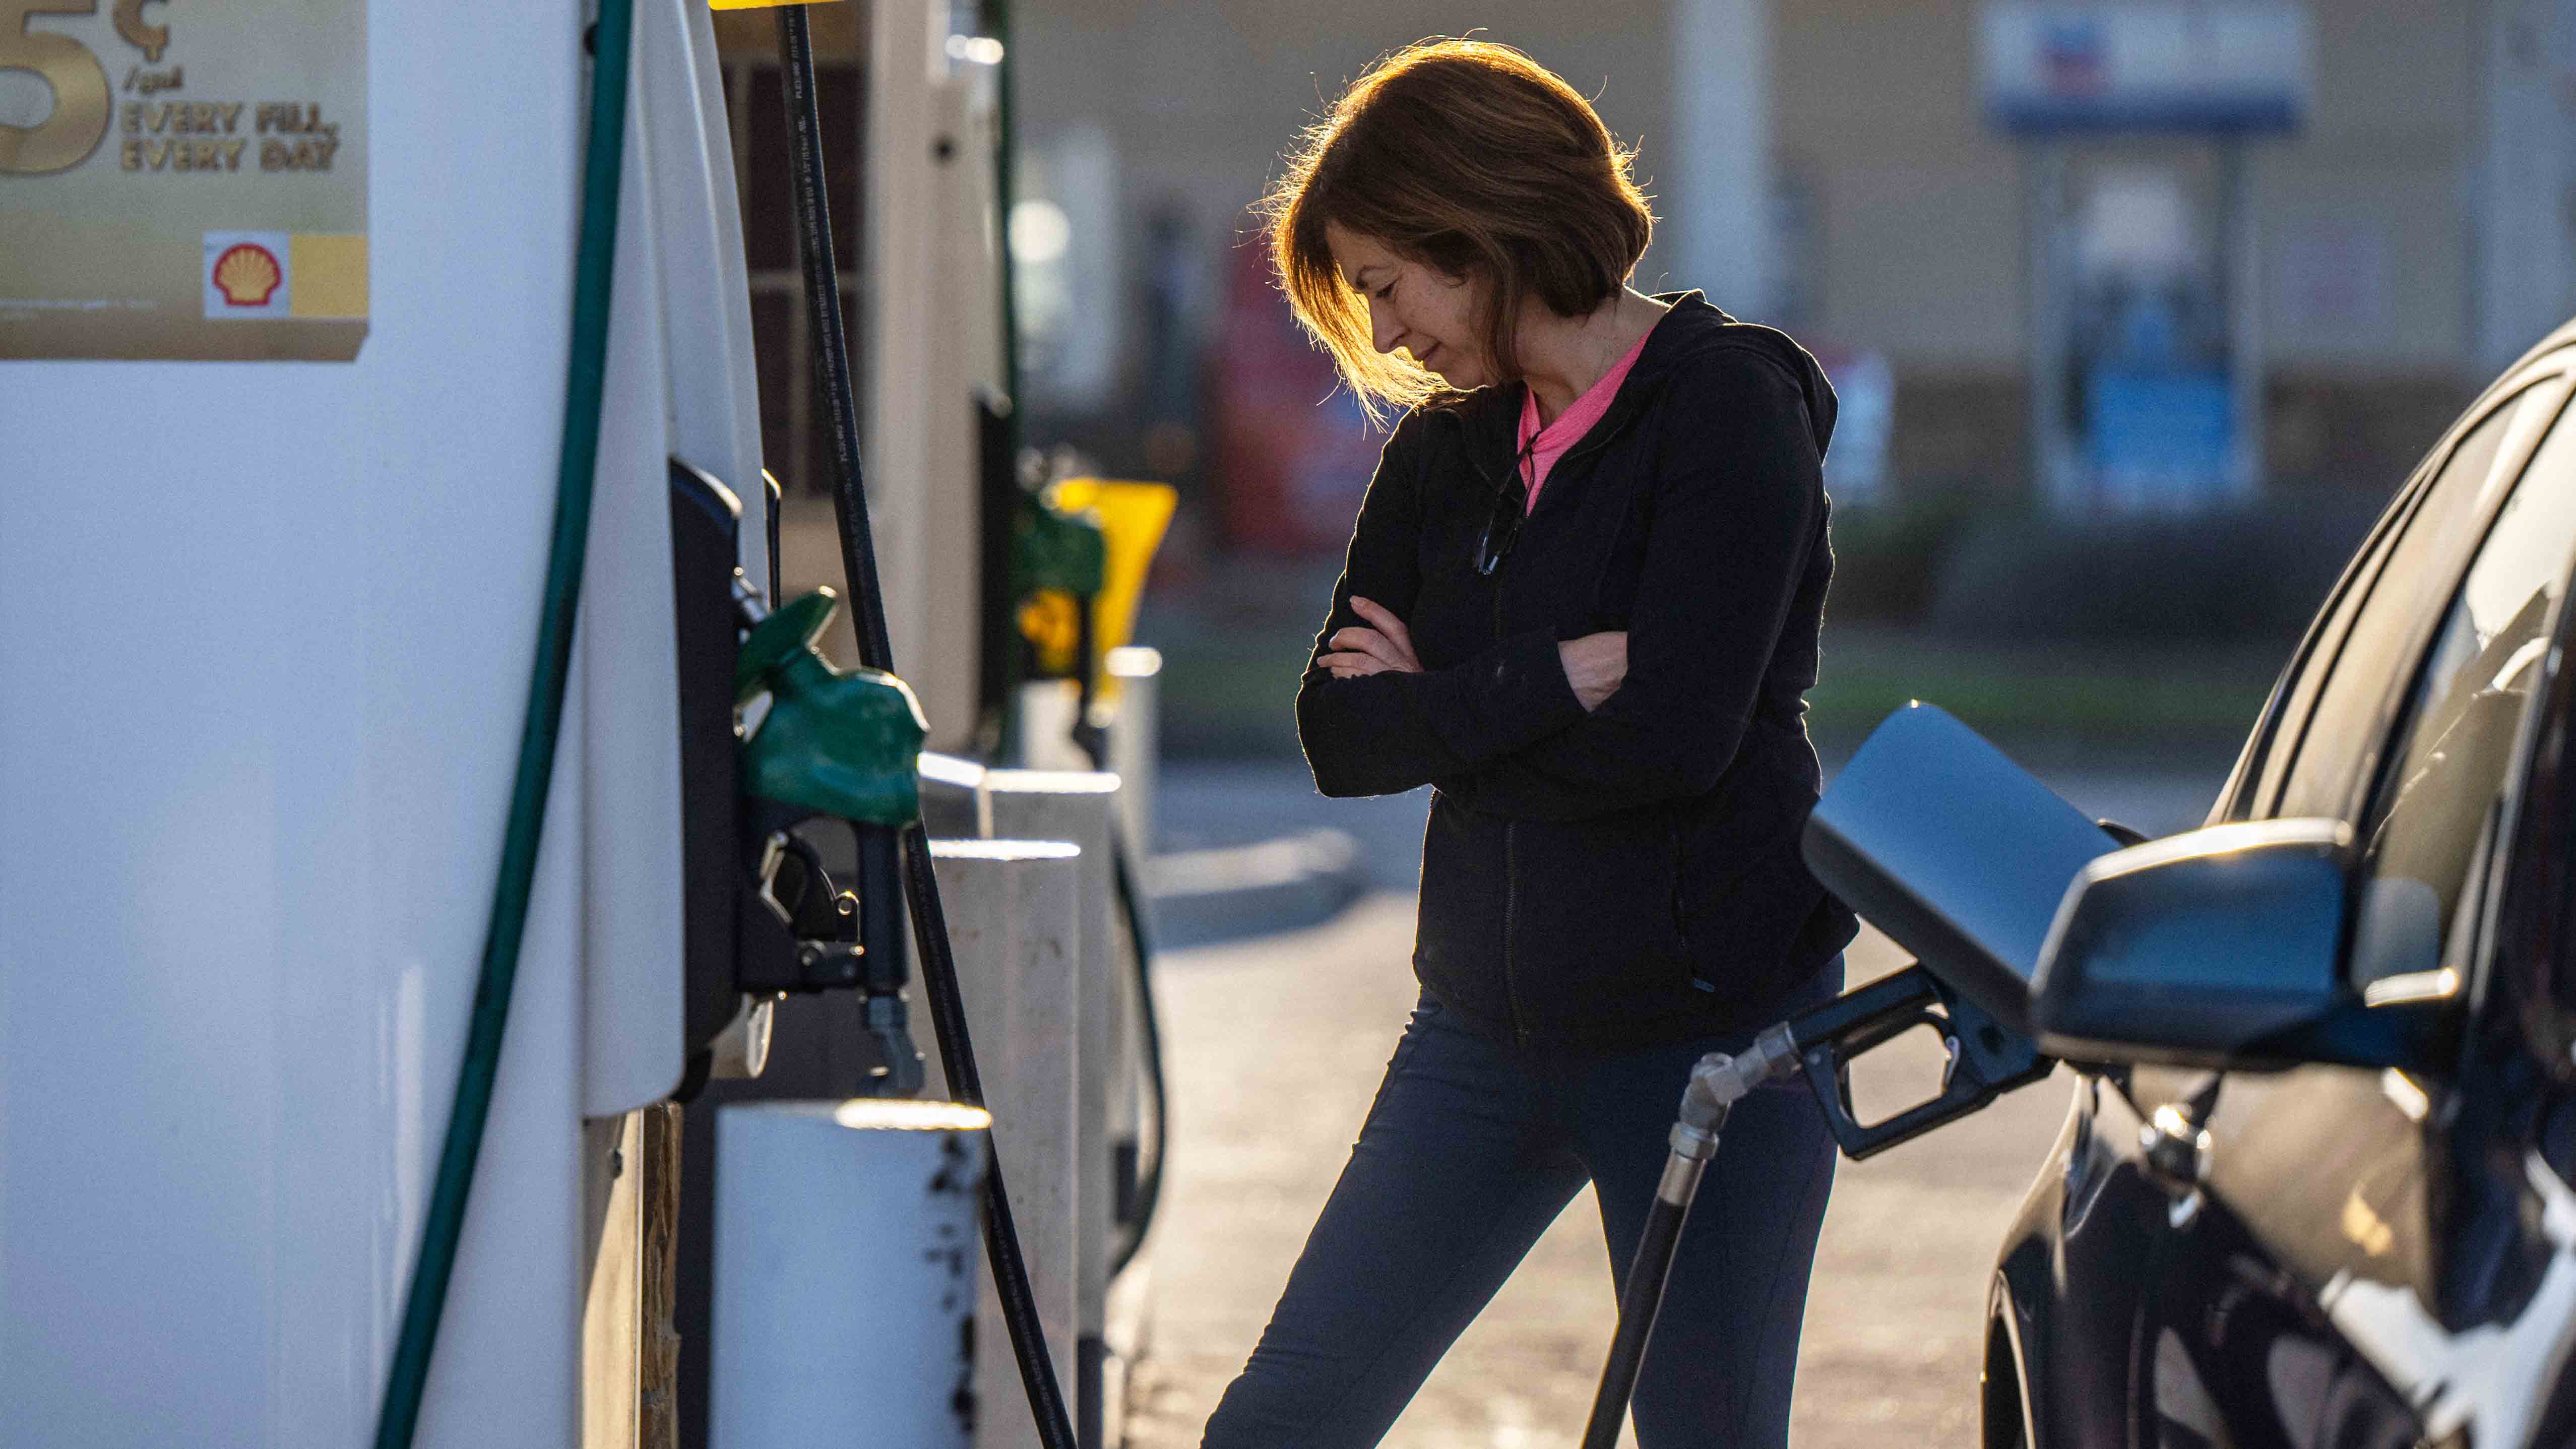 En qué país se encuentra la gasolina más barata? - Quora